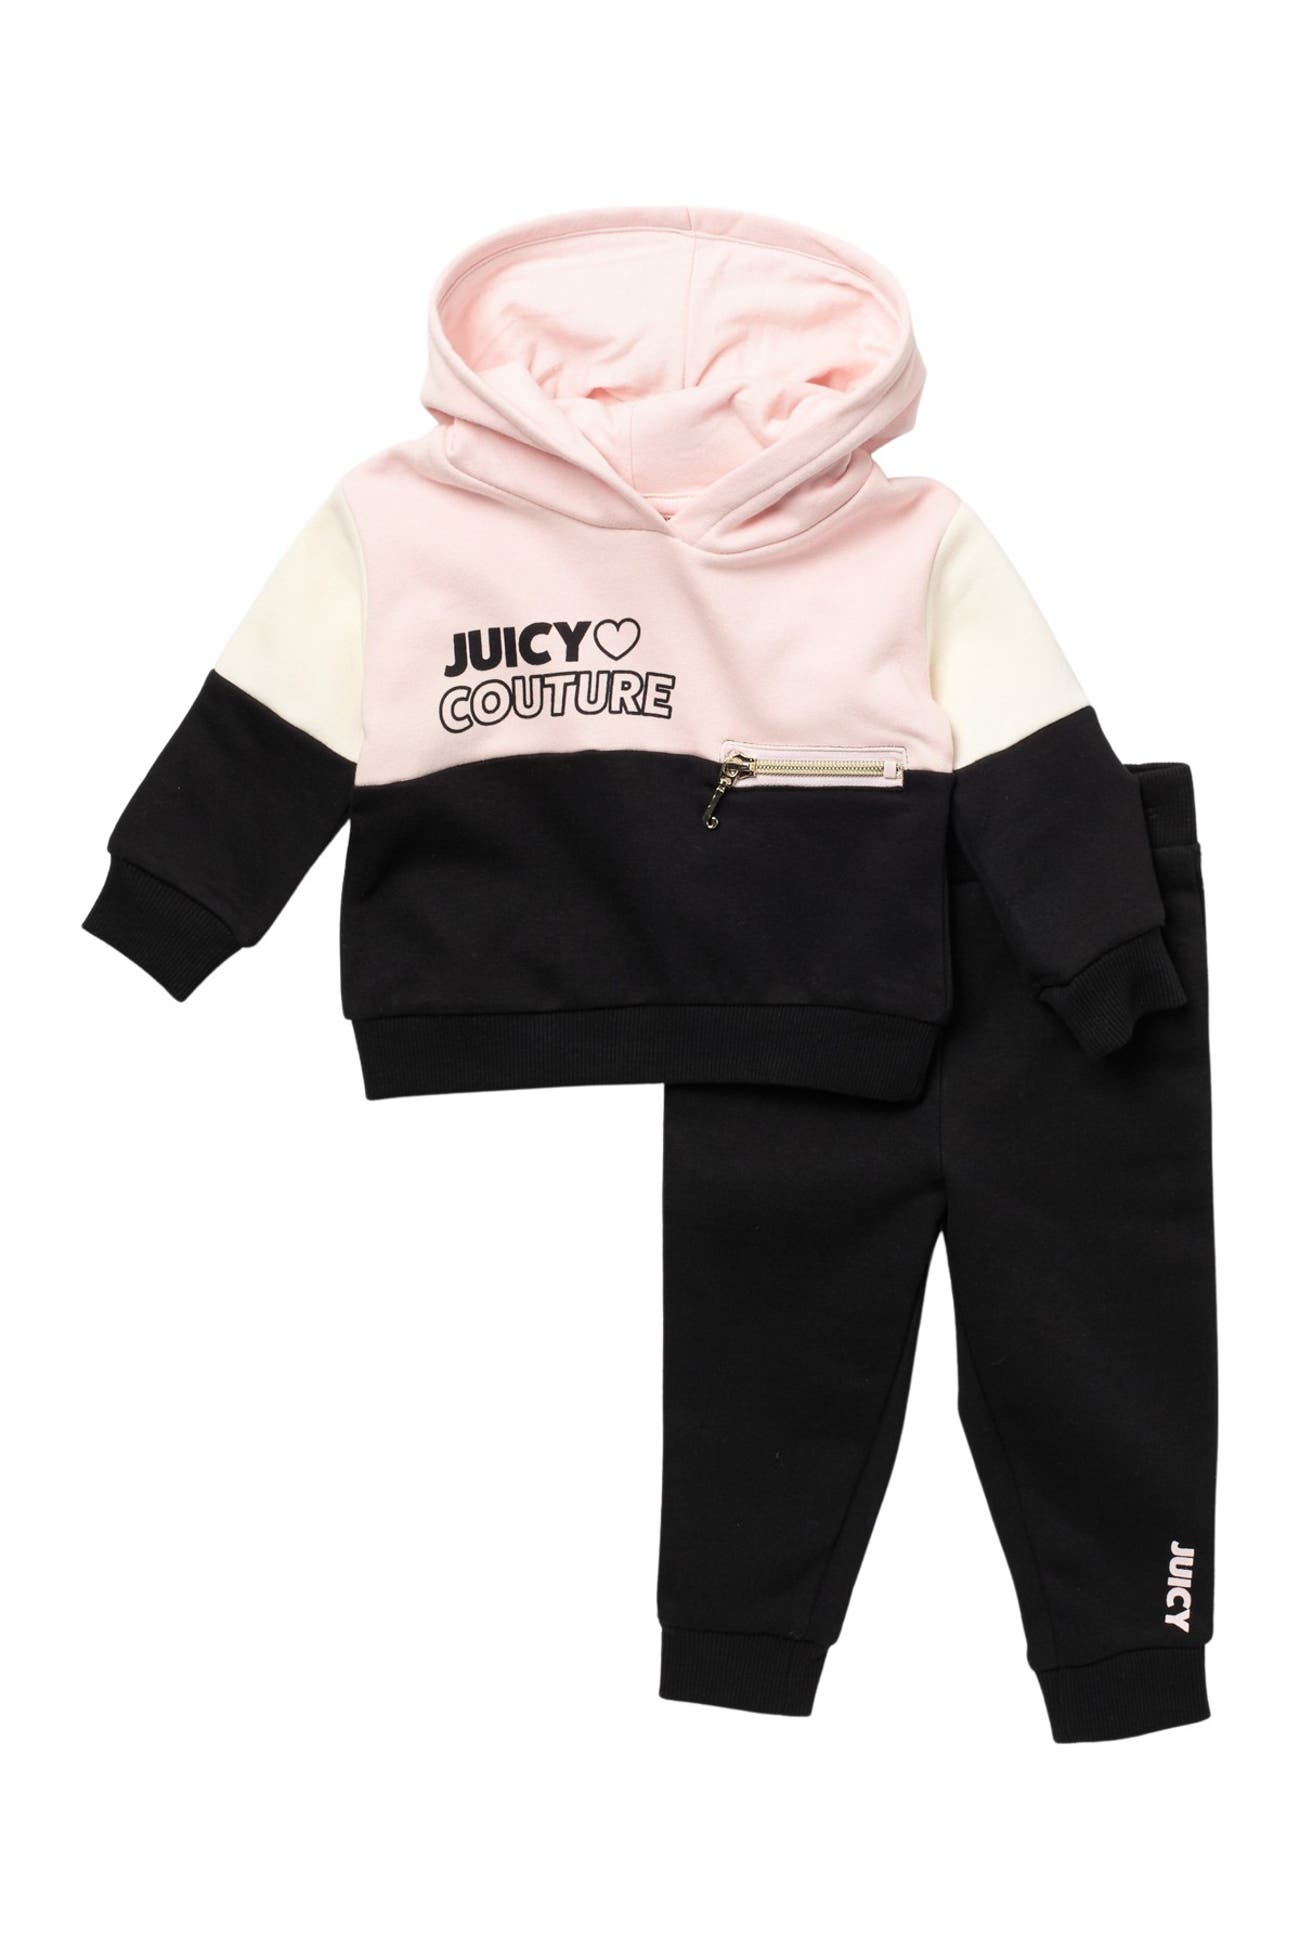 Juicy Couture | Colorblock Hoodie & Pants Set | Nordstrom Rack